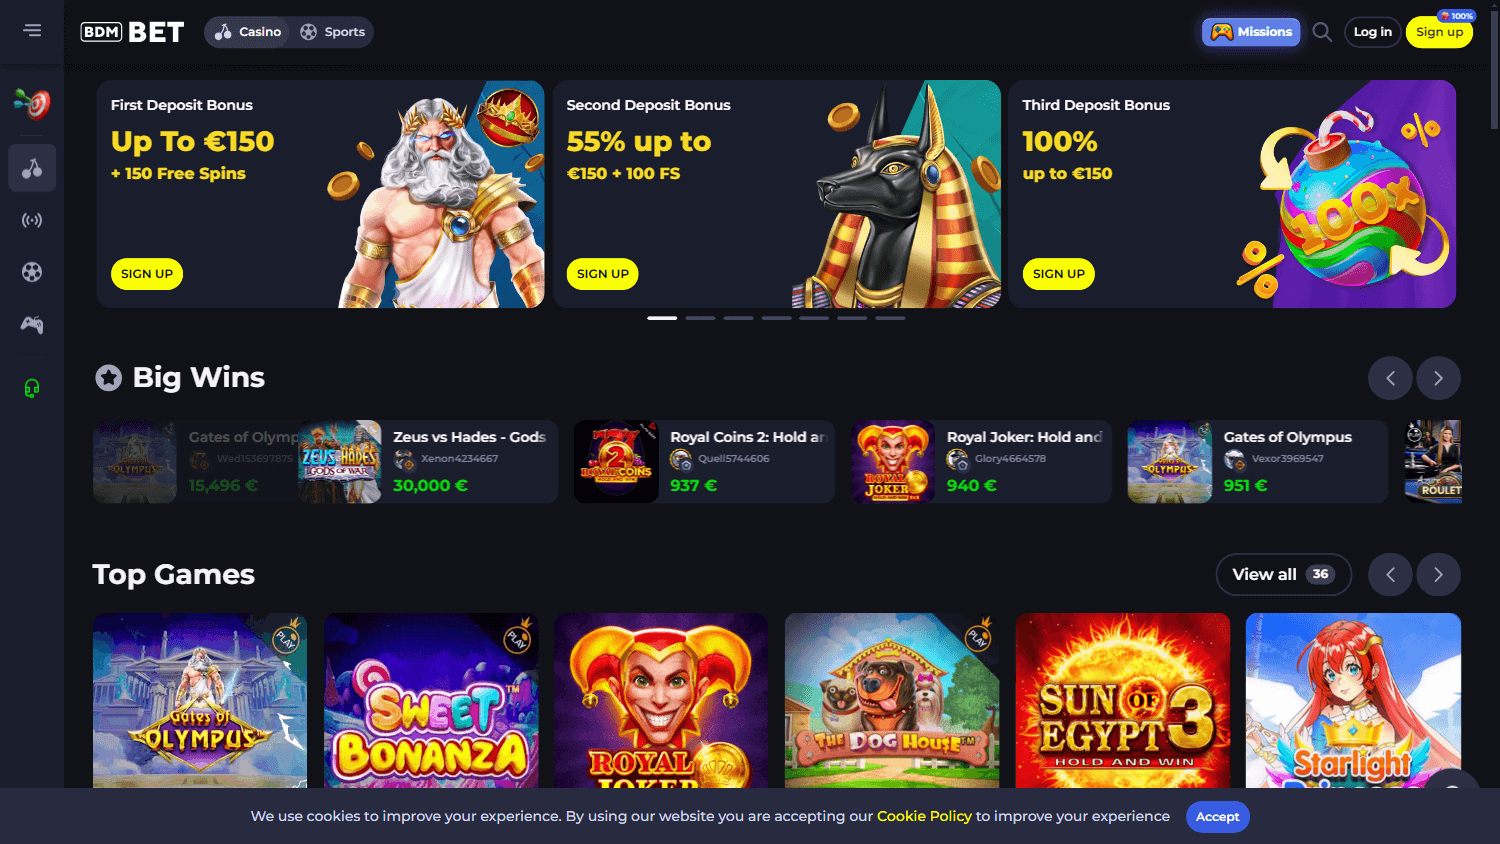 bdm_bet_casino_game_gallery_desktop